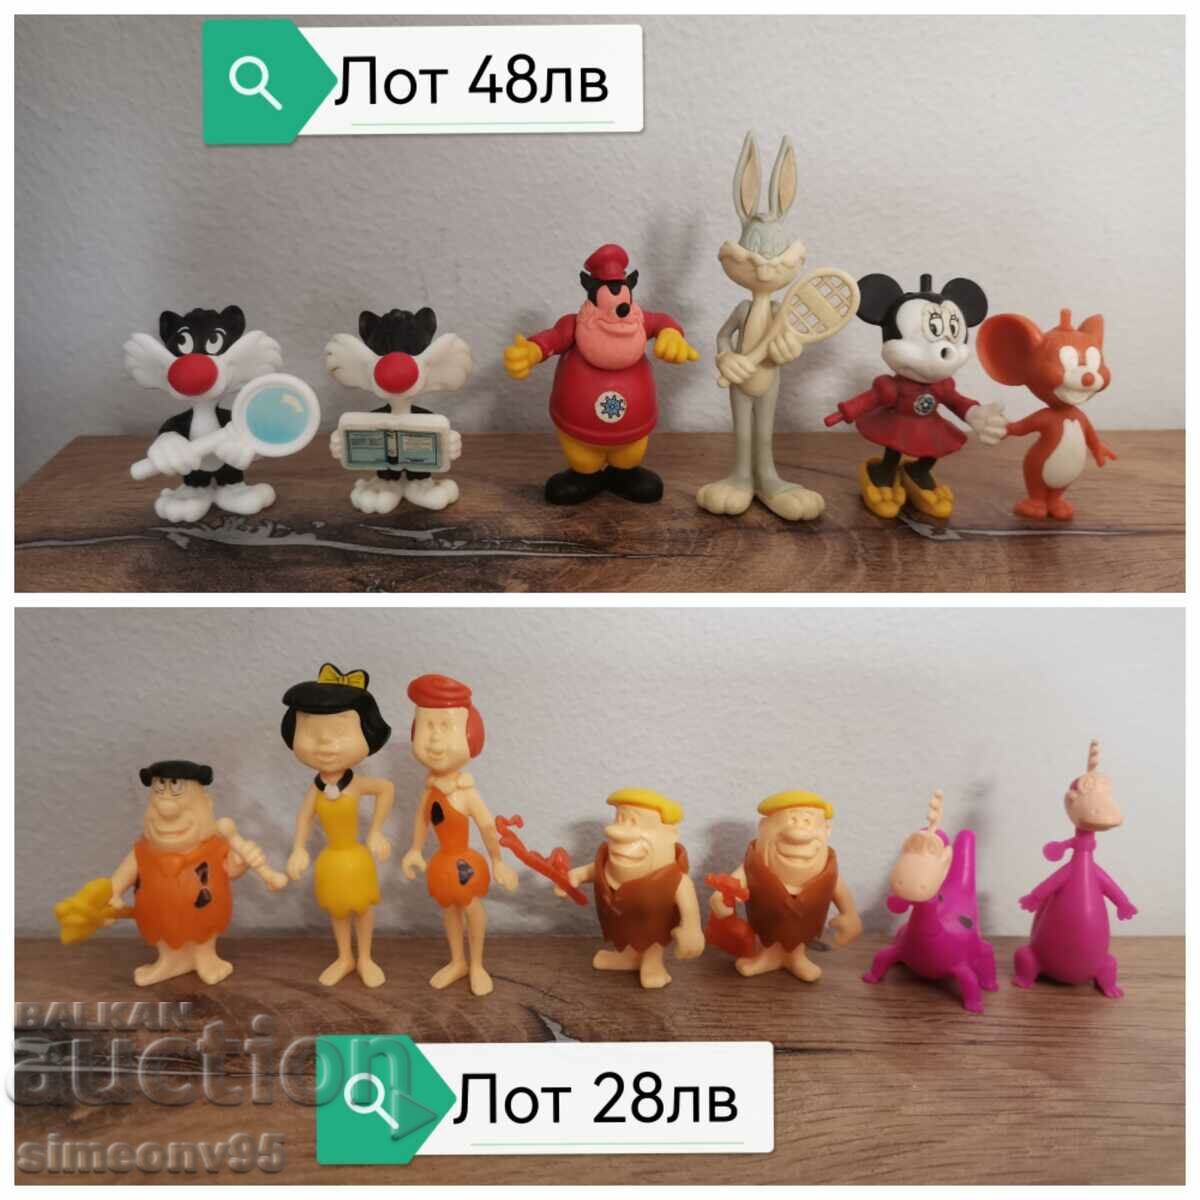 Lot kinder kinder toys figures figures